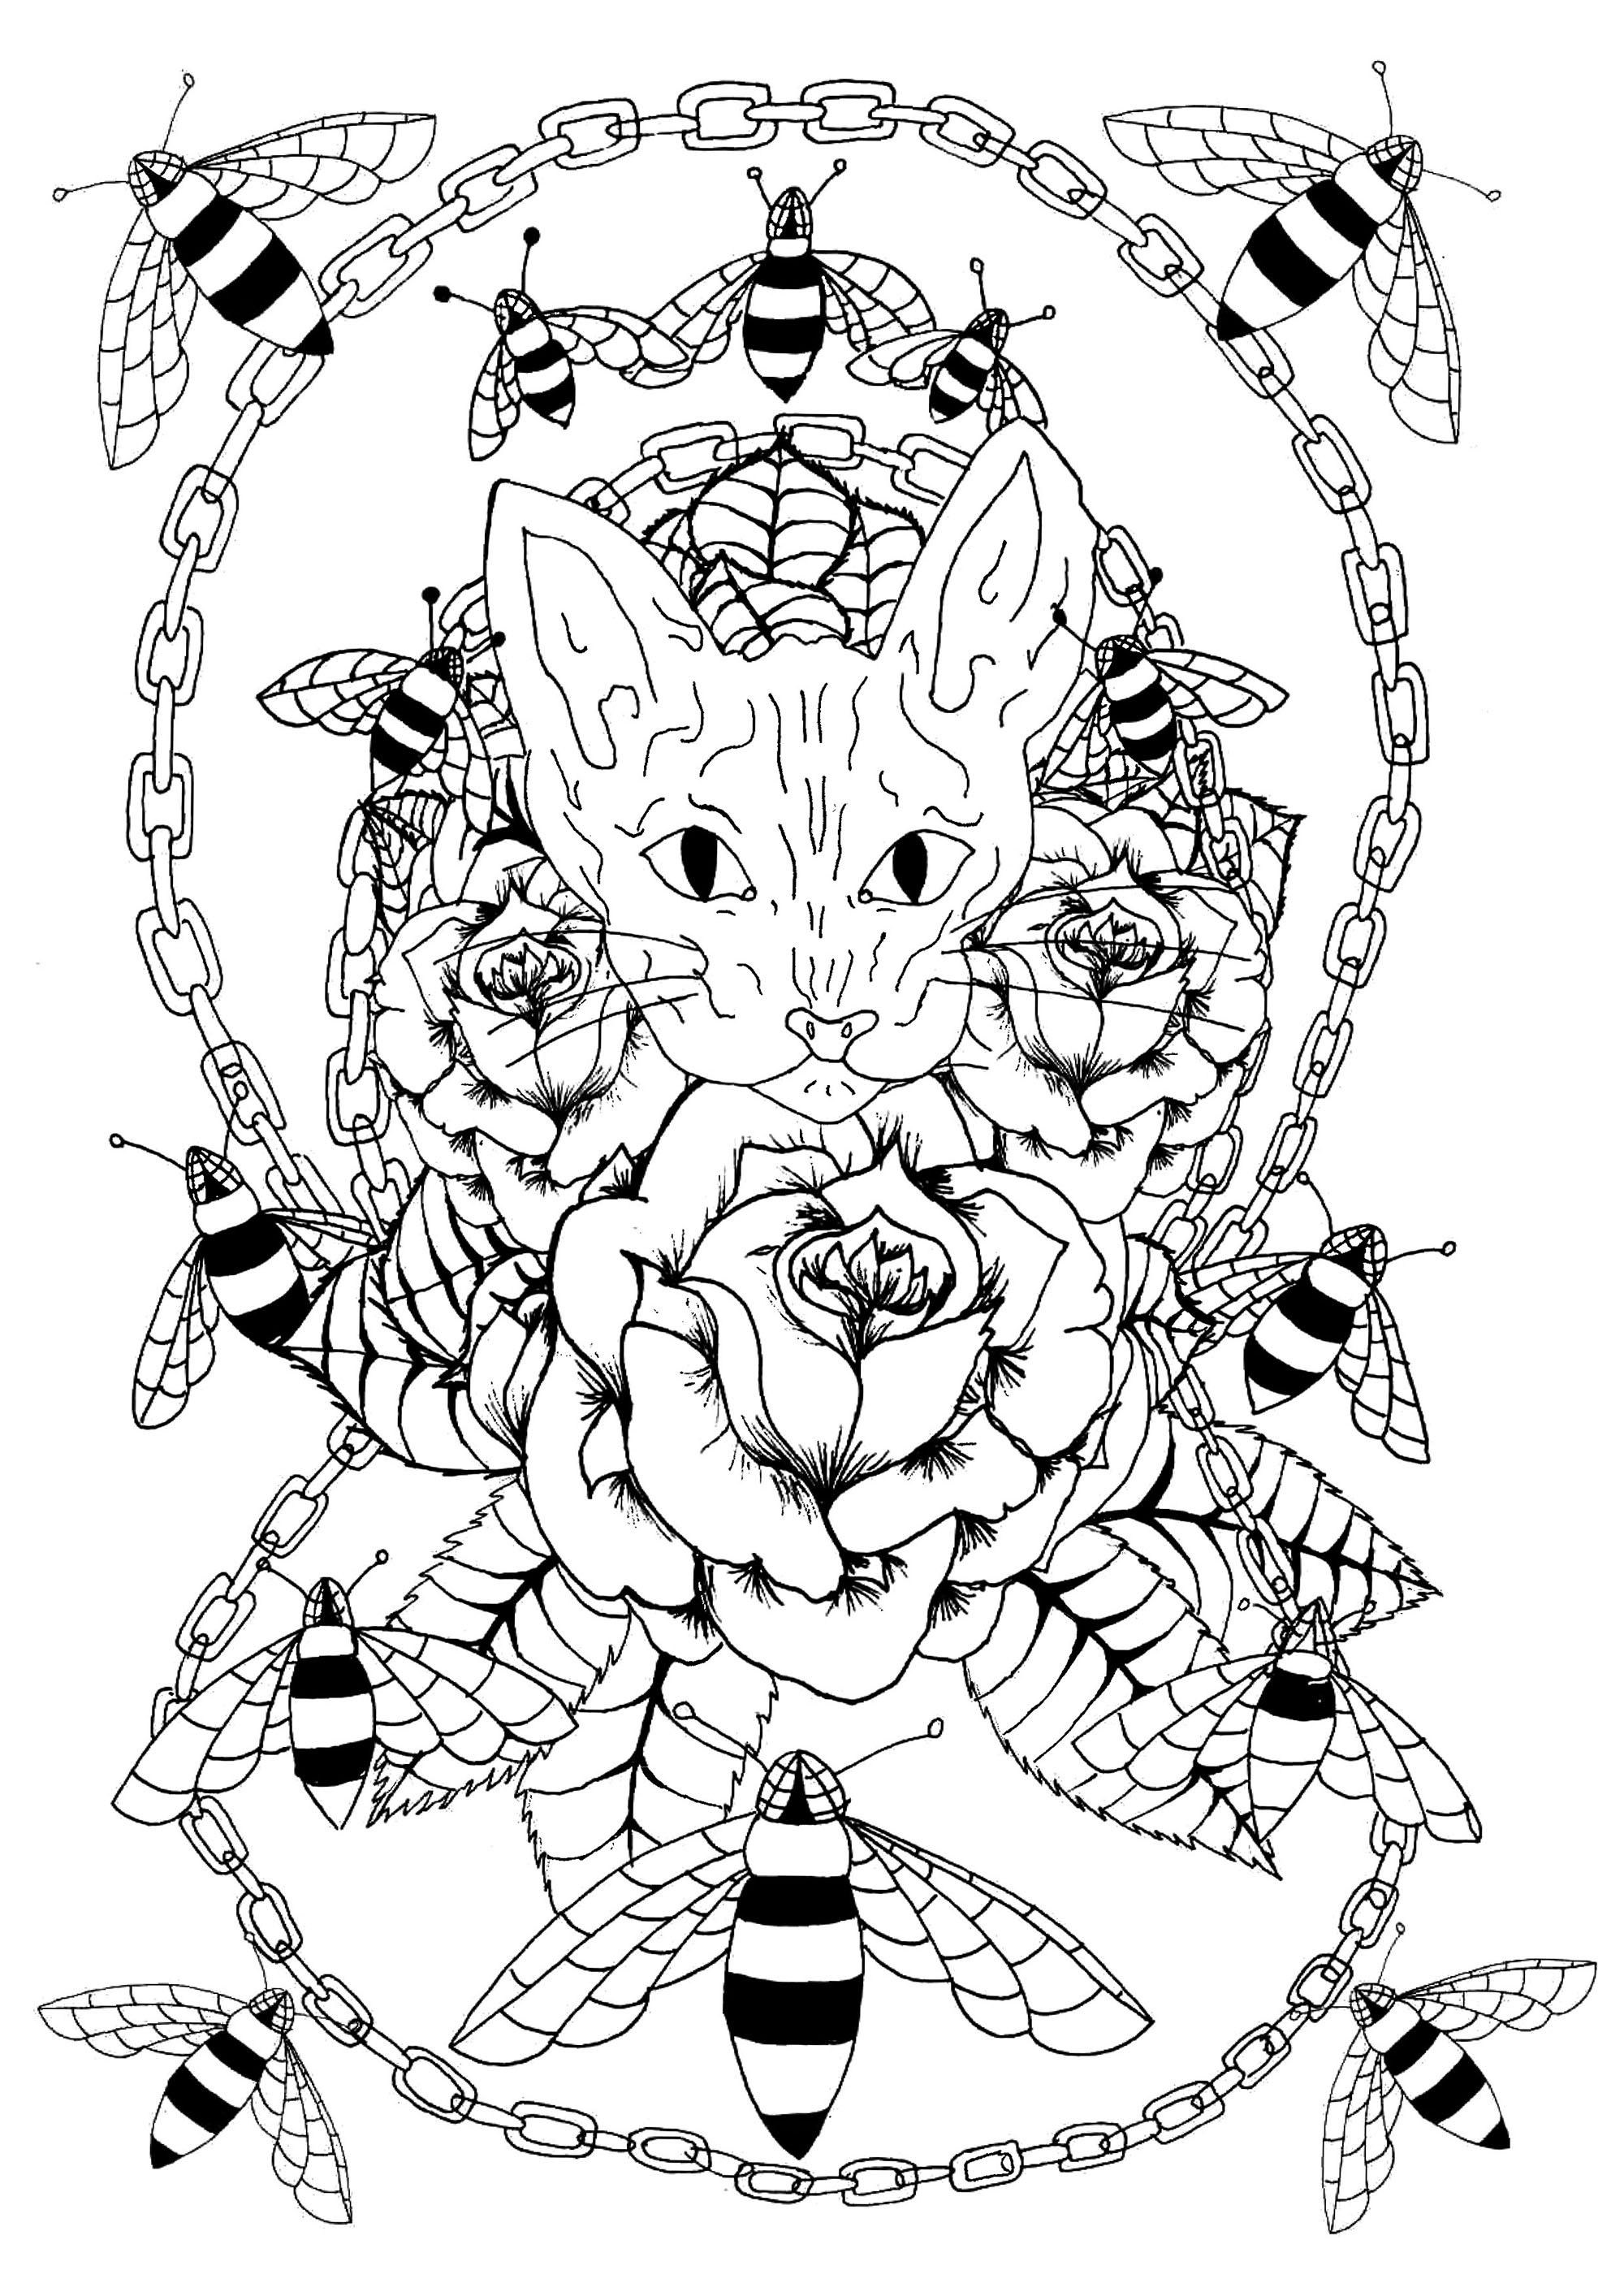 Cabeza de gato Sphynx rodeada de rosas, abejas y una cadena de metal